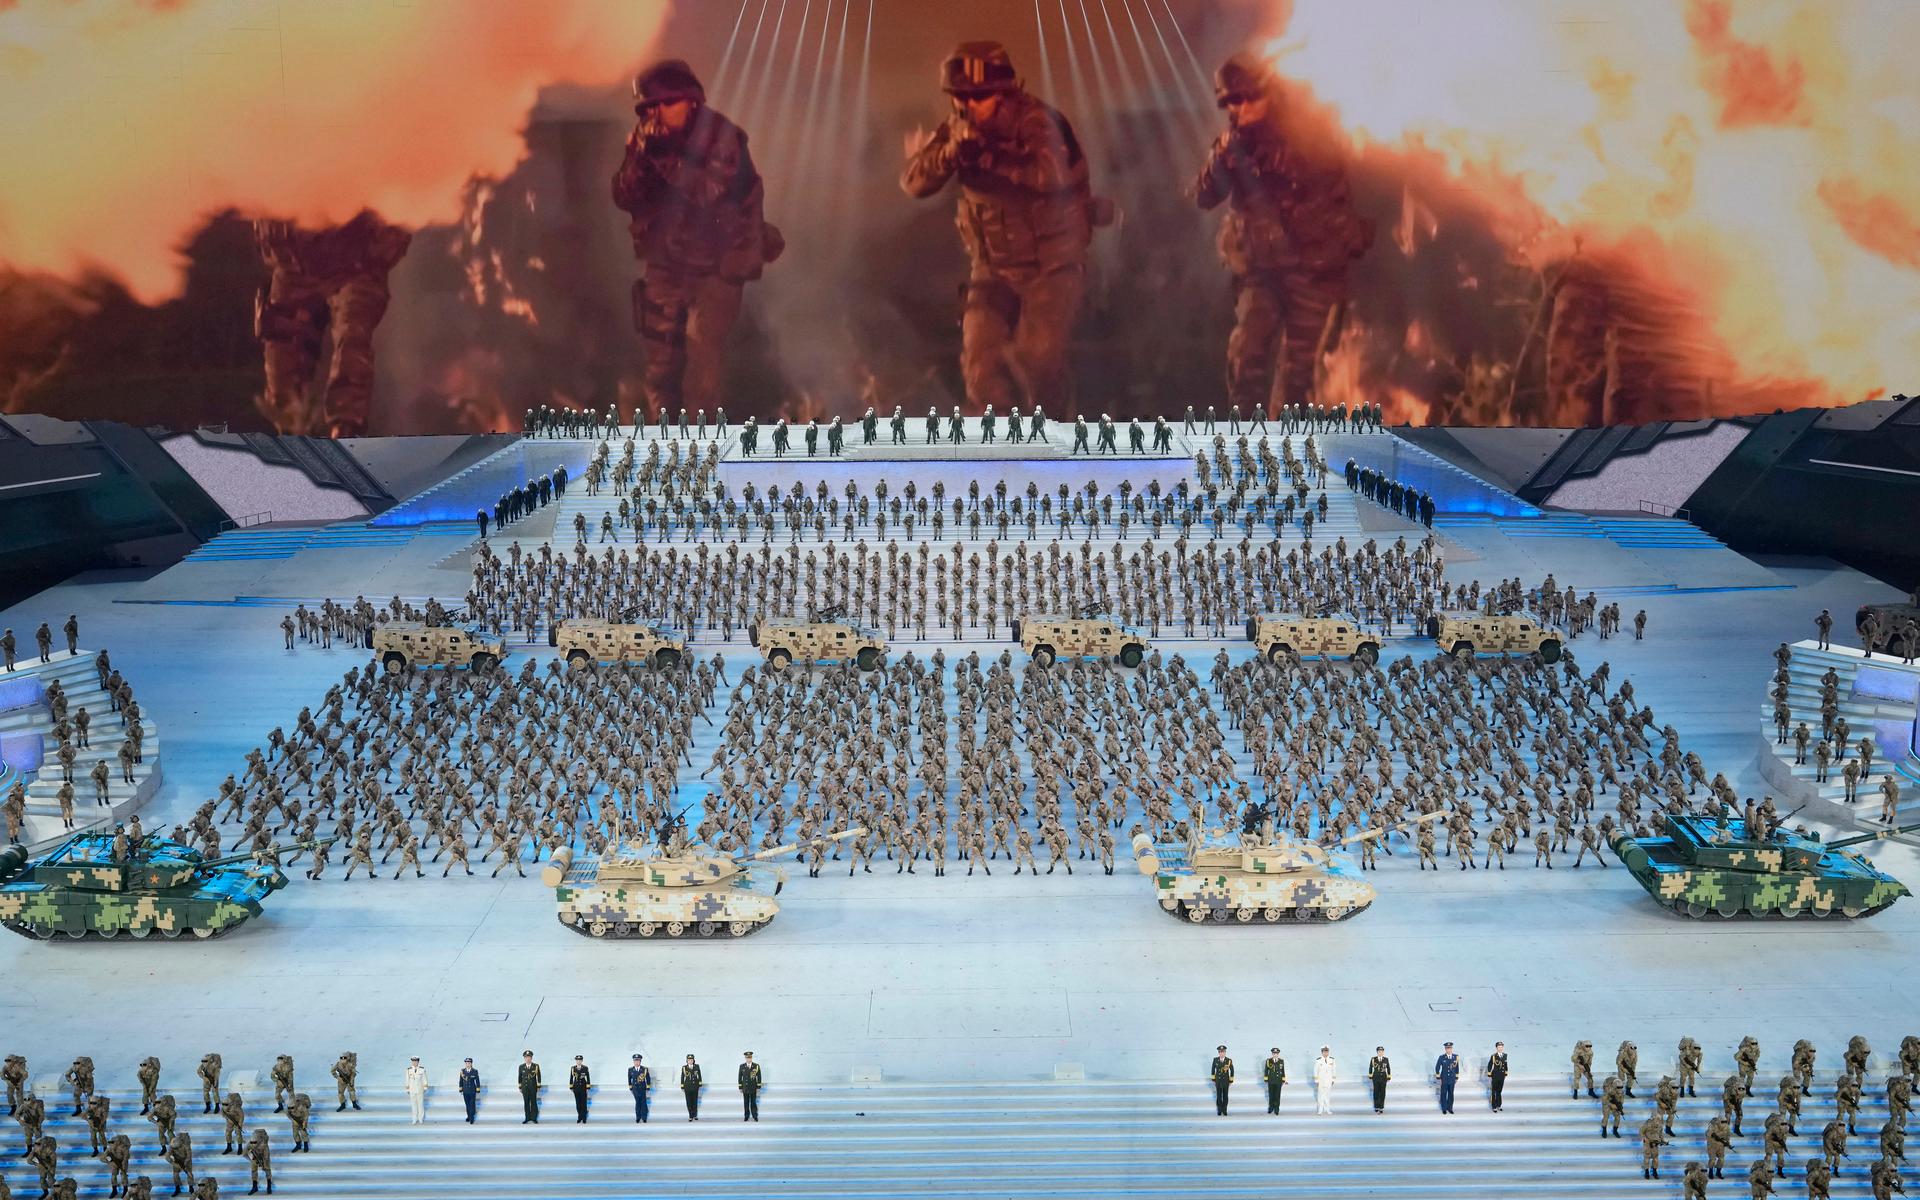 En del av firandet av kommunistpartiets hundraårsjubileum i juni 2021 bestod av att Kinas militärmakt visade upp sig under en galakväll. (Arkivbild)